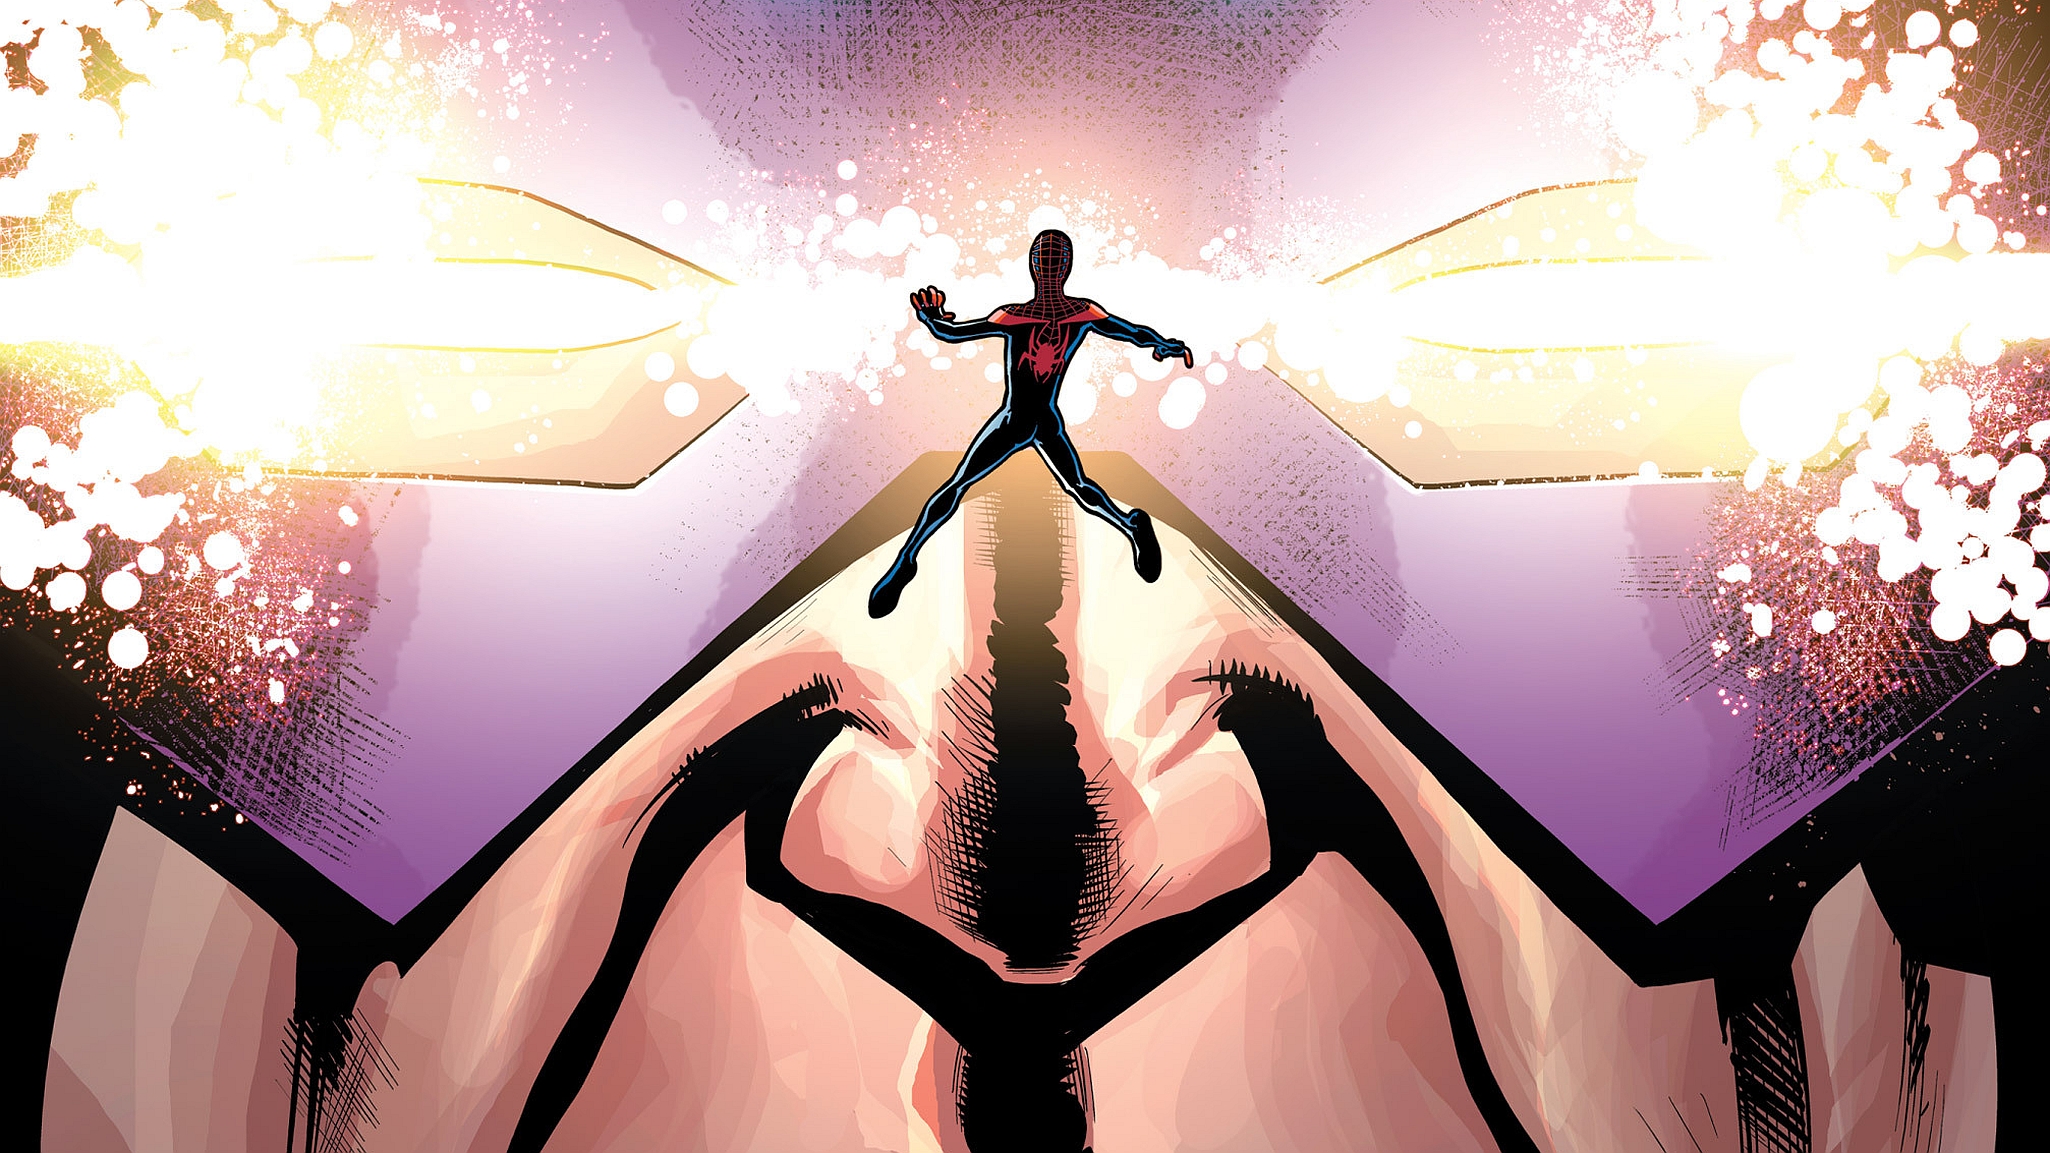 Bande-dessinées Cataclysm: Ultimate Spider-Man Fond d'écran HD | Image